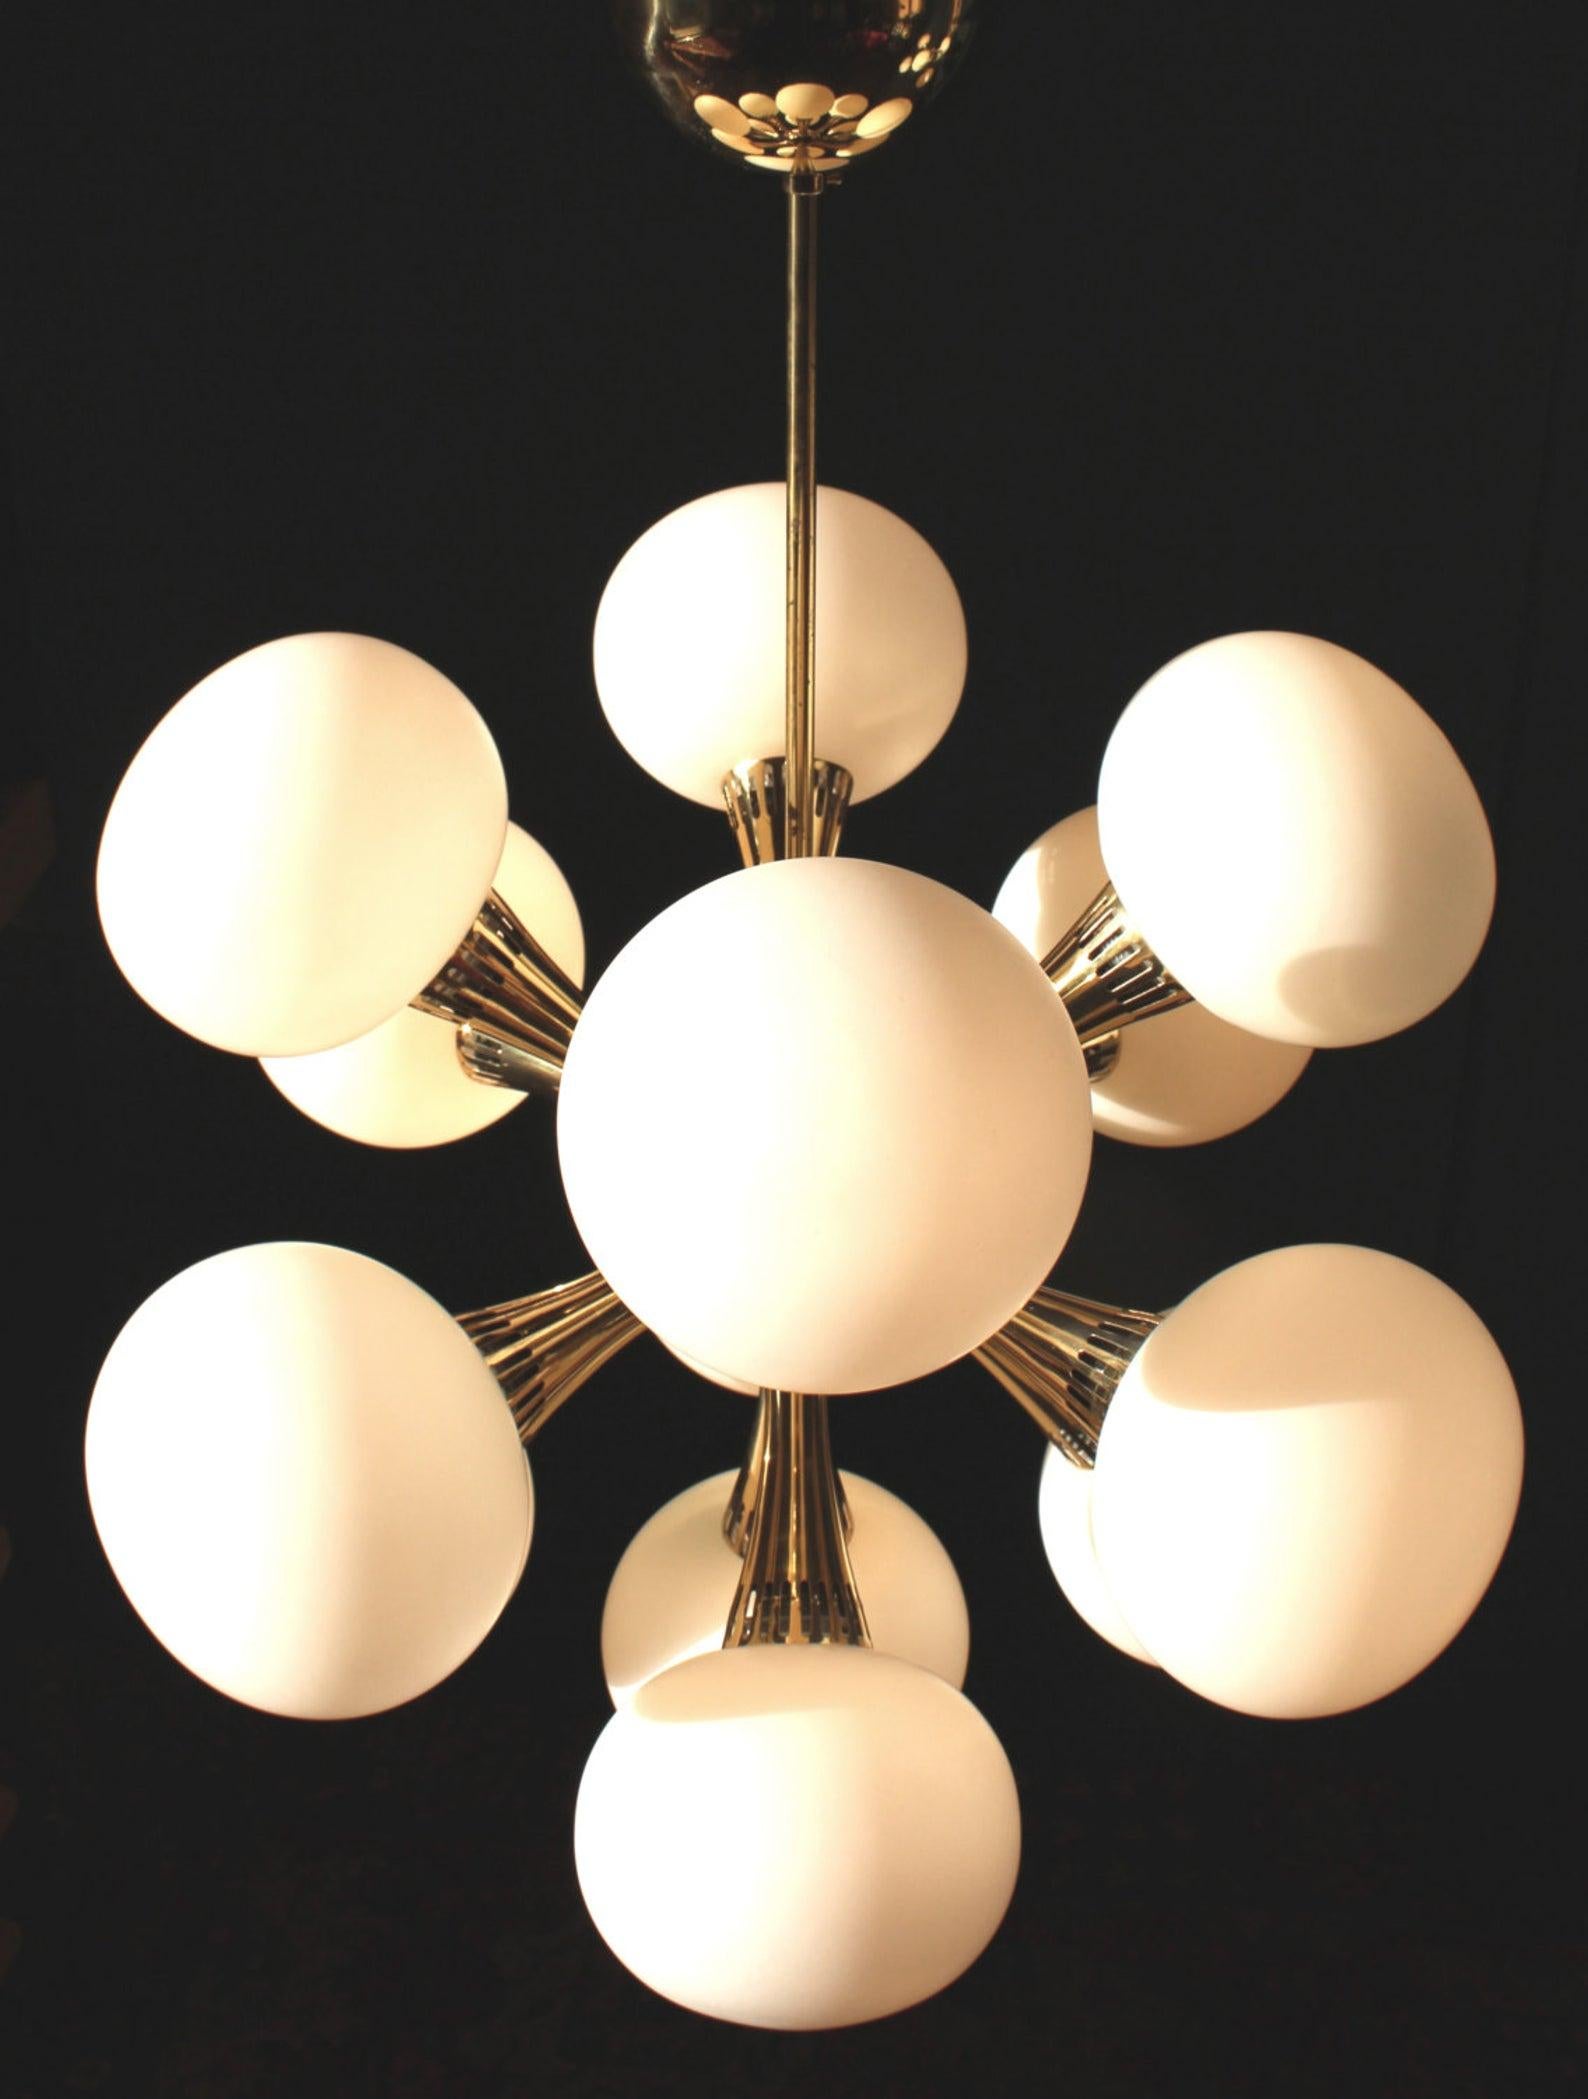 Organischer Sputnik-Kronleuchter Milano 1950er Typ mit 13 Lichtern (E14)
Messing und elliptische Opalglaskugeln

Dieser Sputnik-Kronleuchter ist ein zeitloses und elegantes Meisterwerk des italienischen Möbeldesigns der Jahrhundertmitte. Die